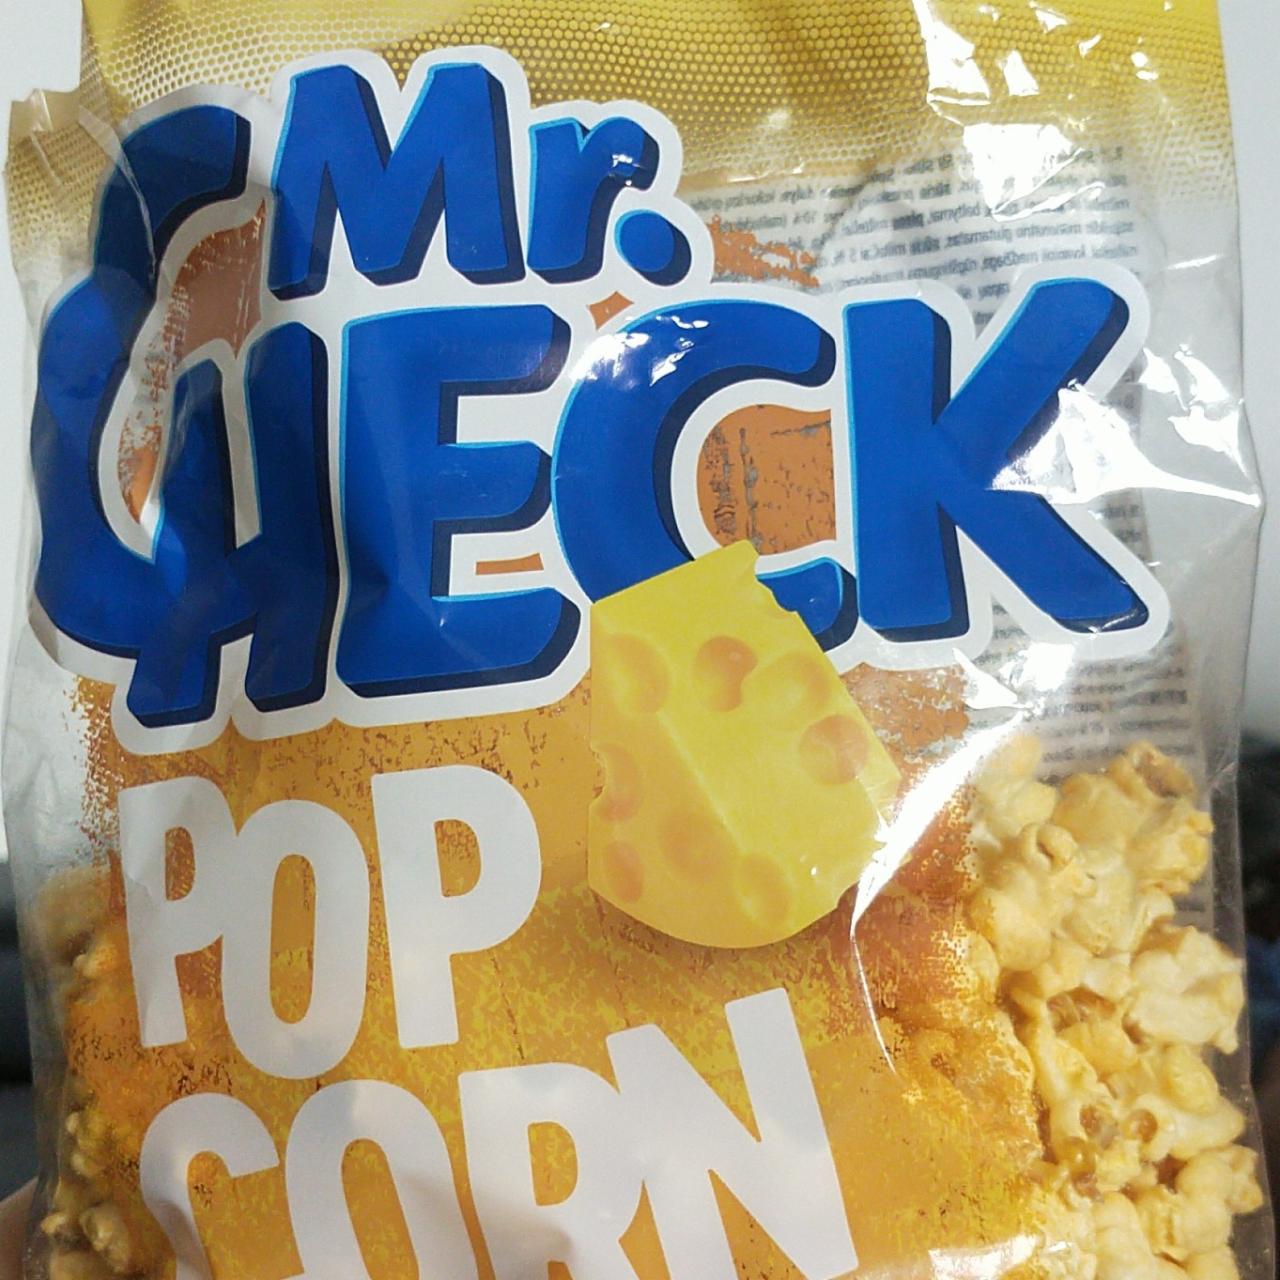 Fotografie - Cheese Pop Corn Mr.Check